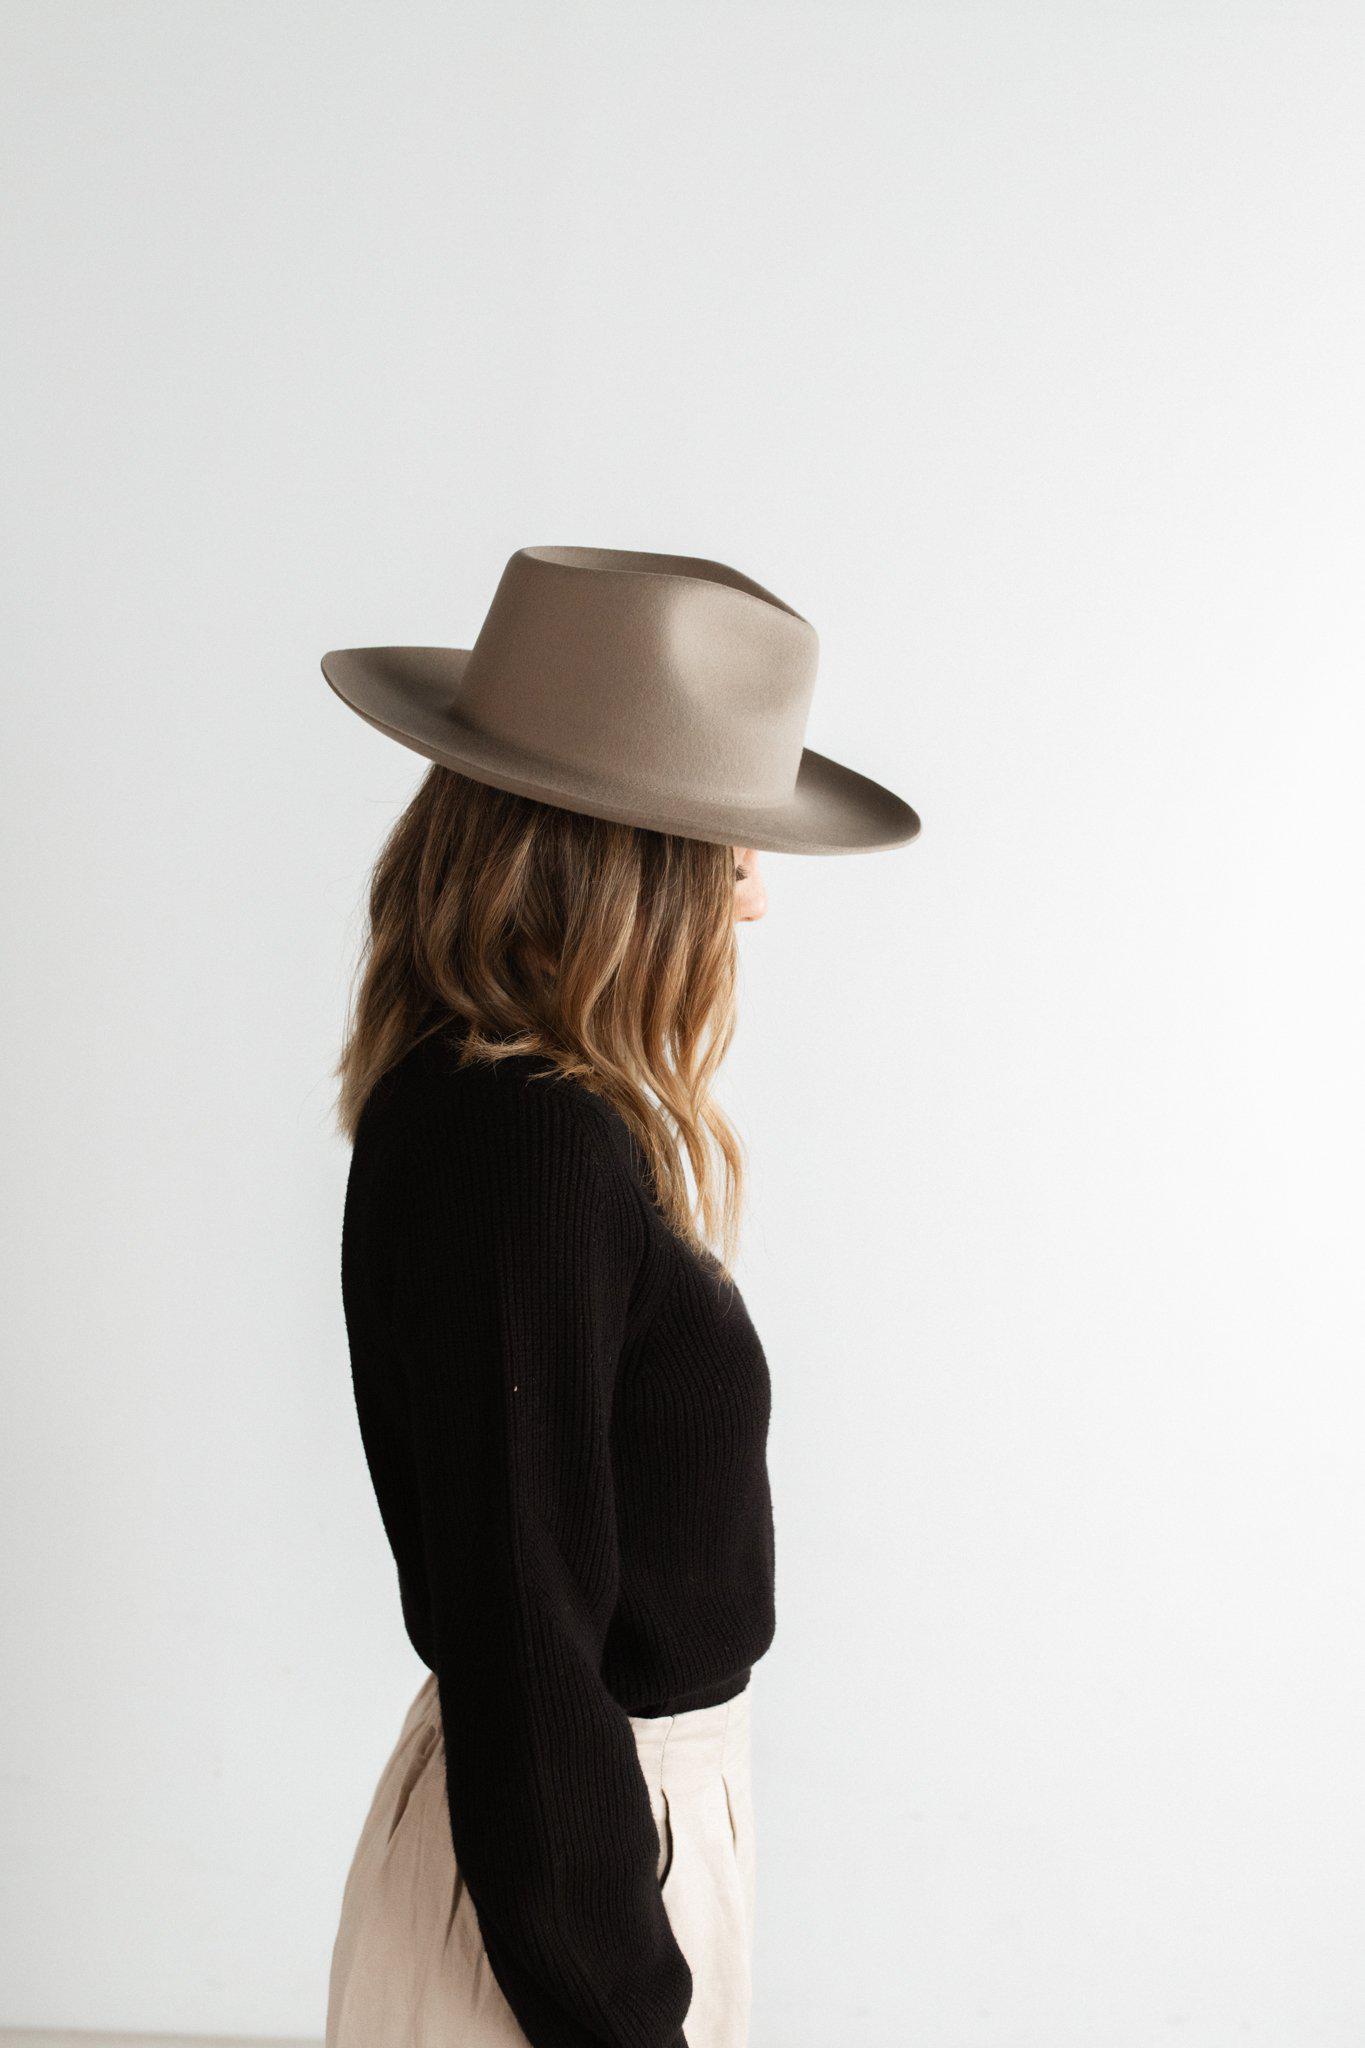 June Teardrop Rancher - Western Felt Hat